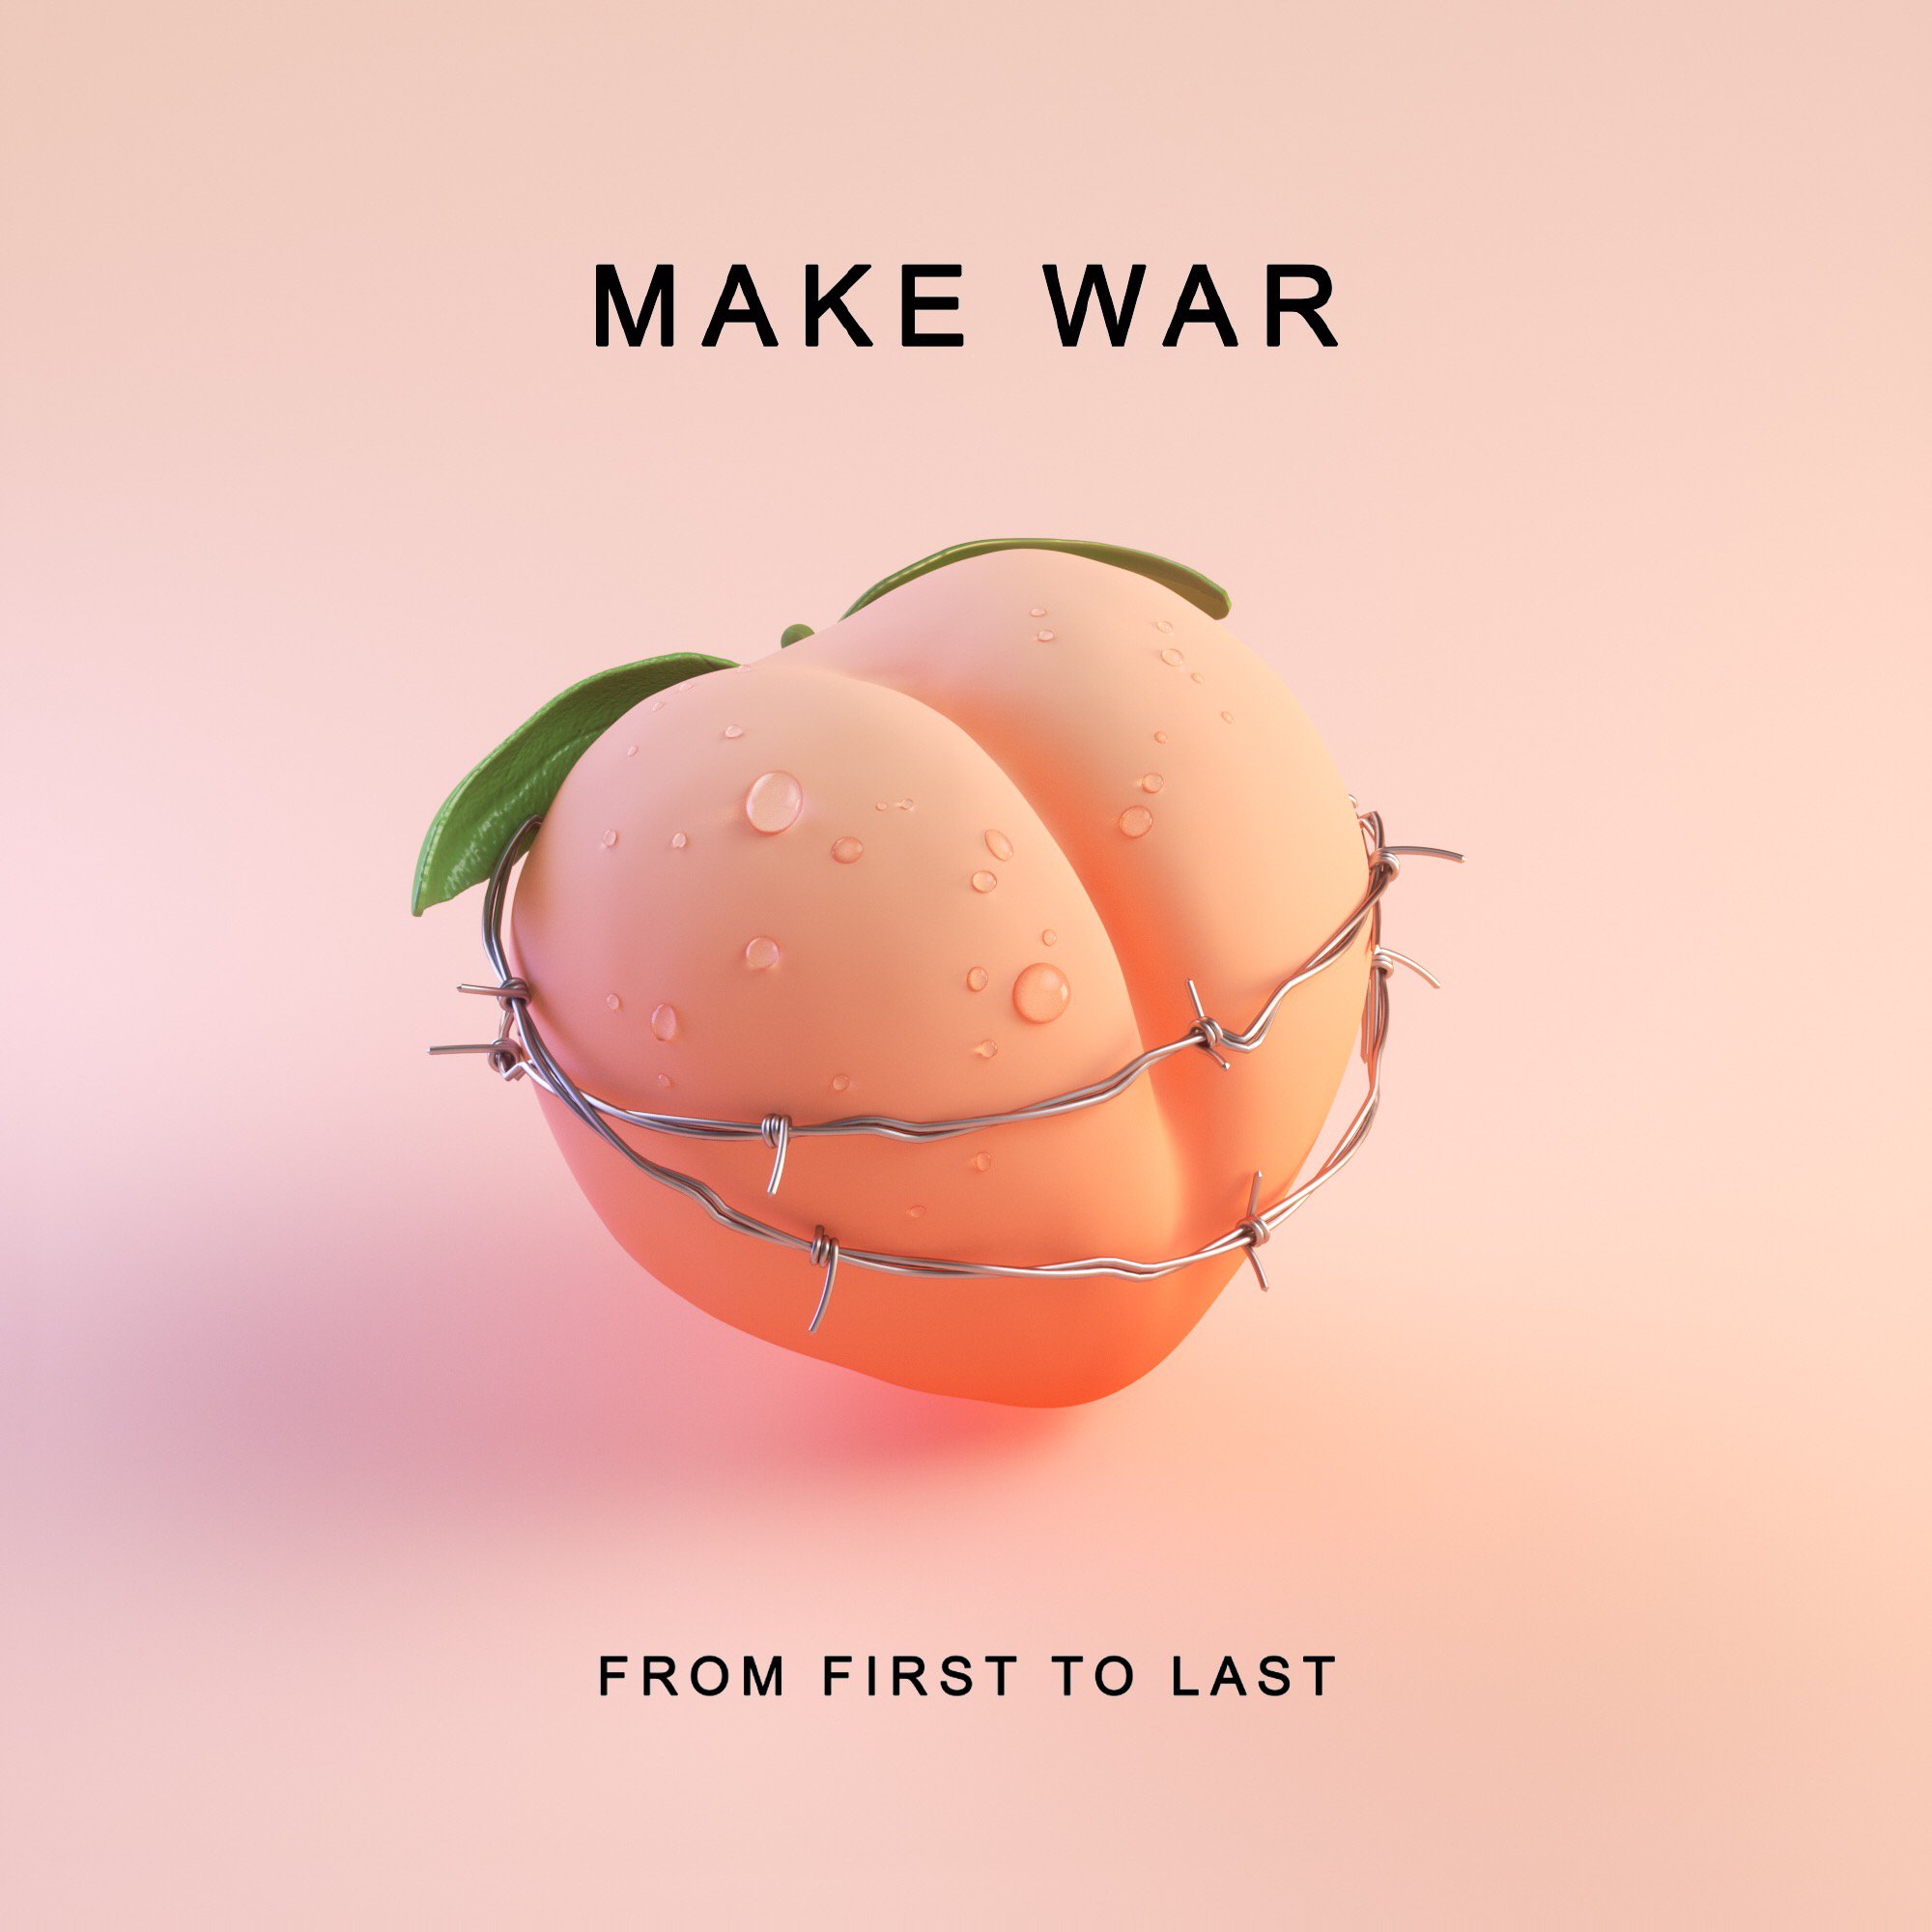 Обложка сингла Skrillex "Make War"